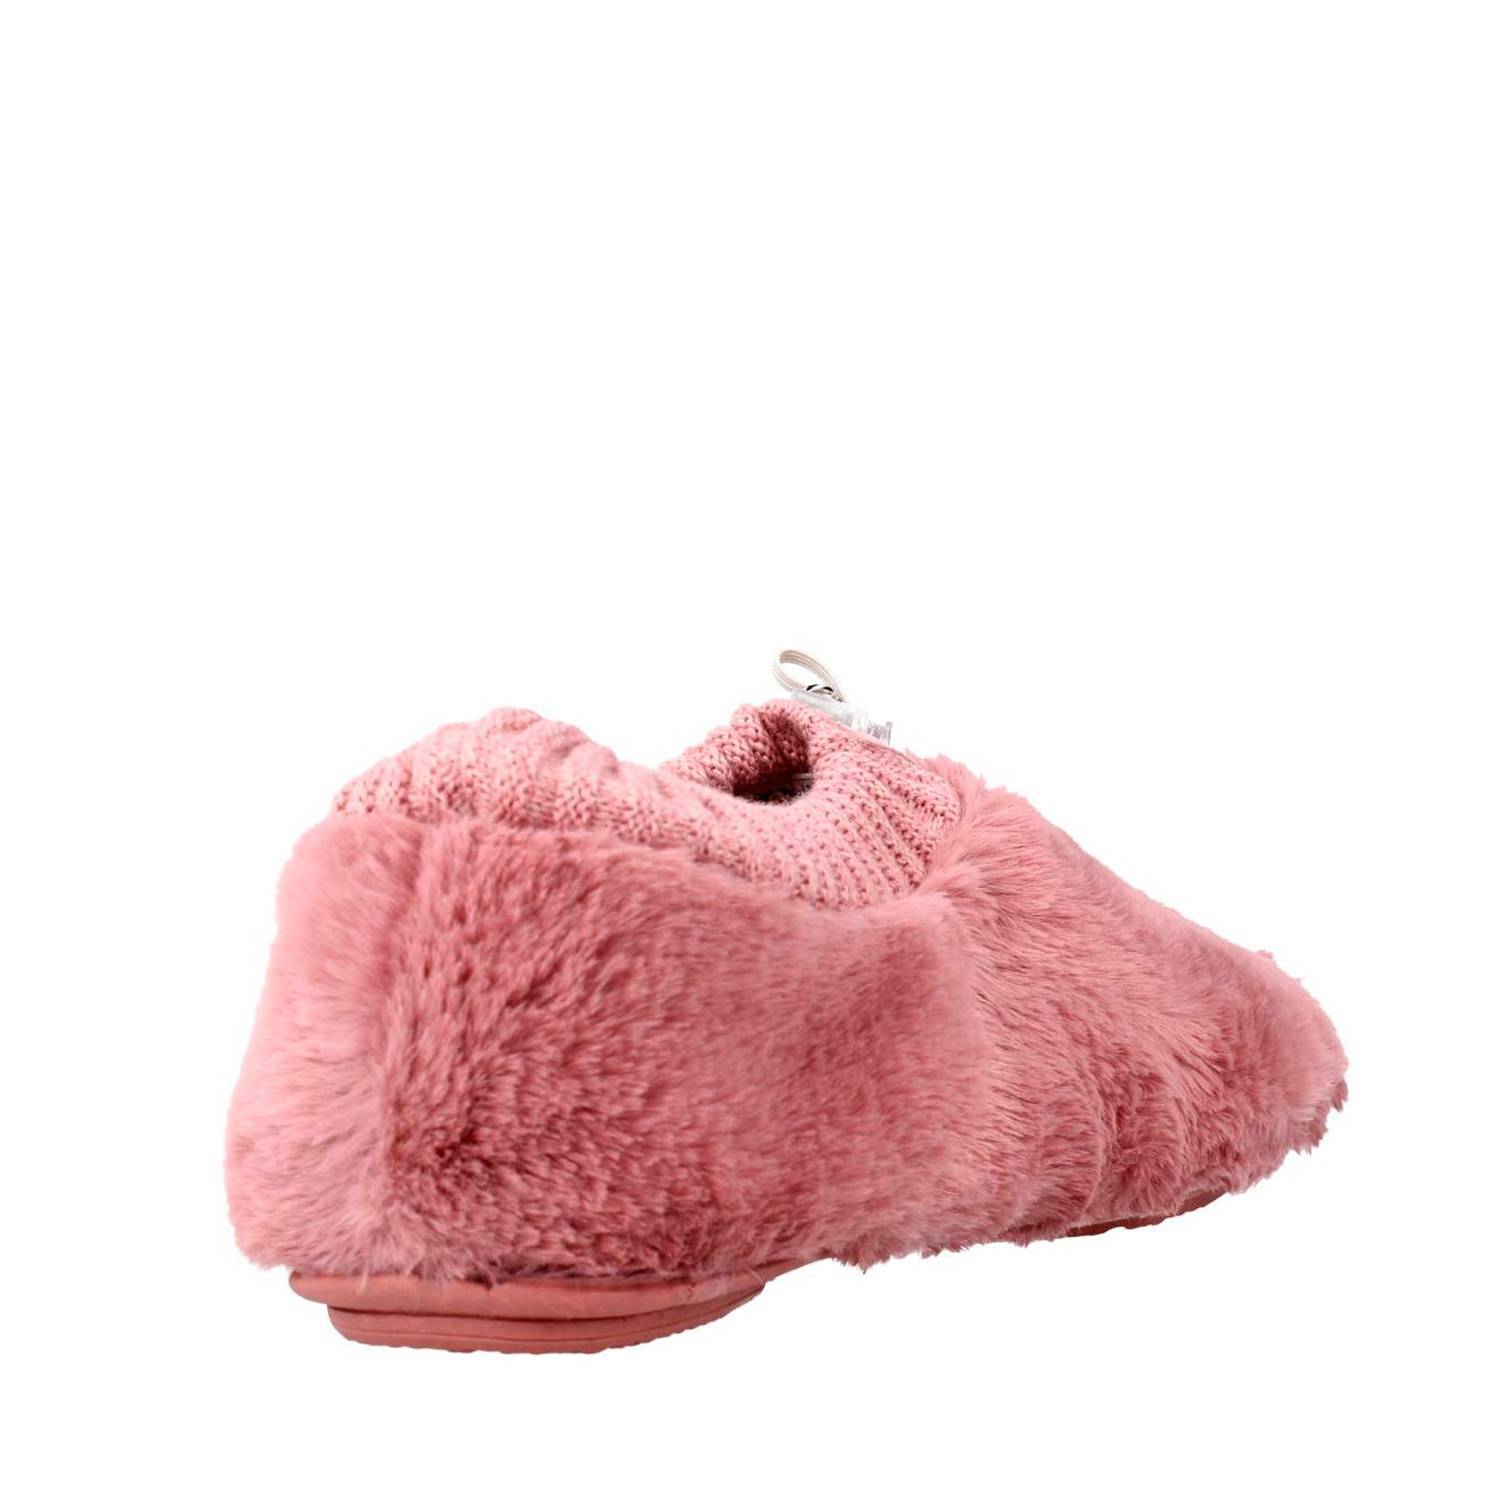 Zapatillas de casa mujer de la marca Vulladi modelo 3626 en color rosa. Zapatillas cerradas en textil con suave pelo y cuello de punto. Cierre ajustable en el empeine. Fina suela de goma.